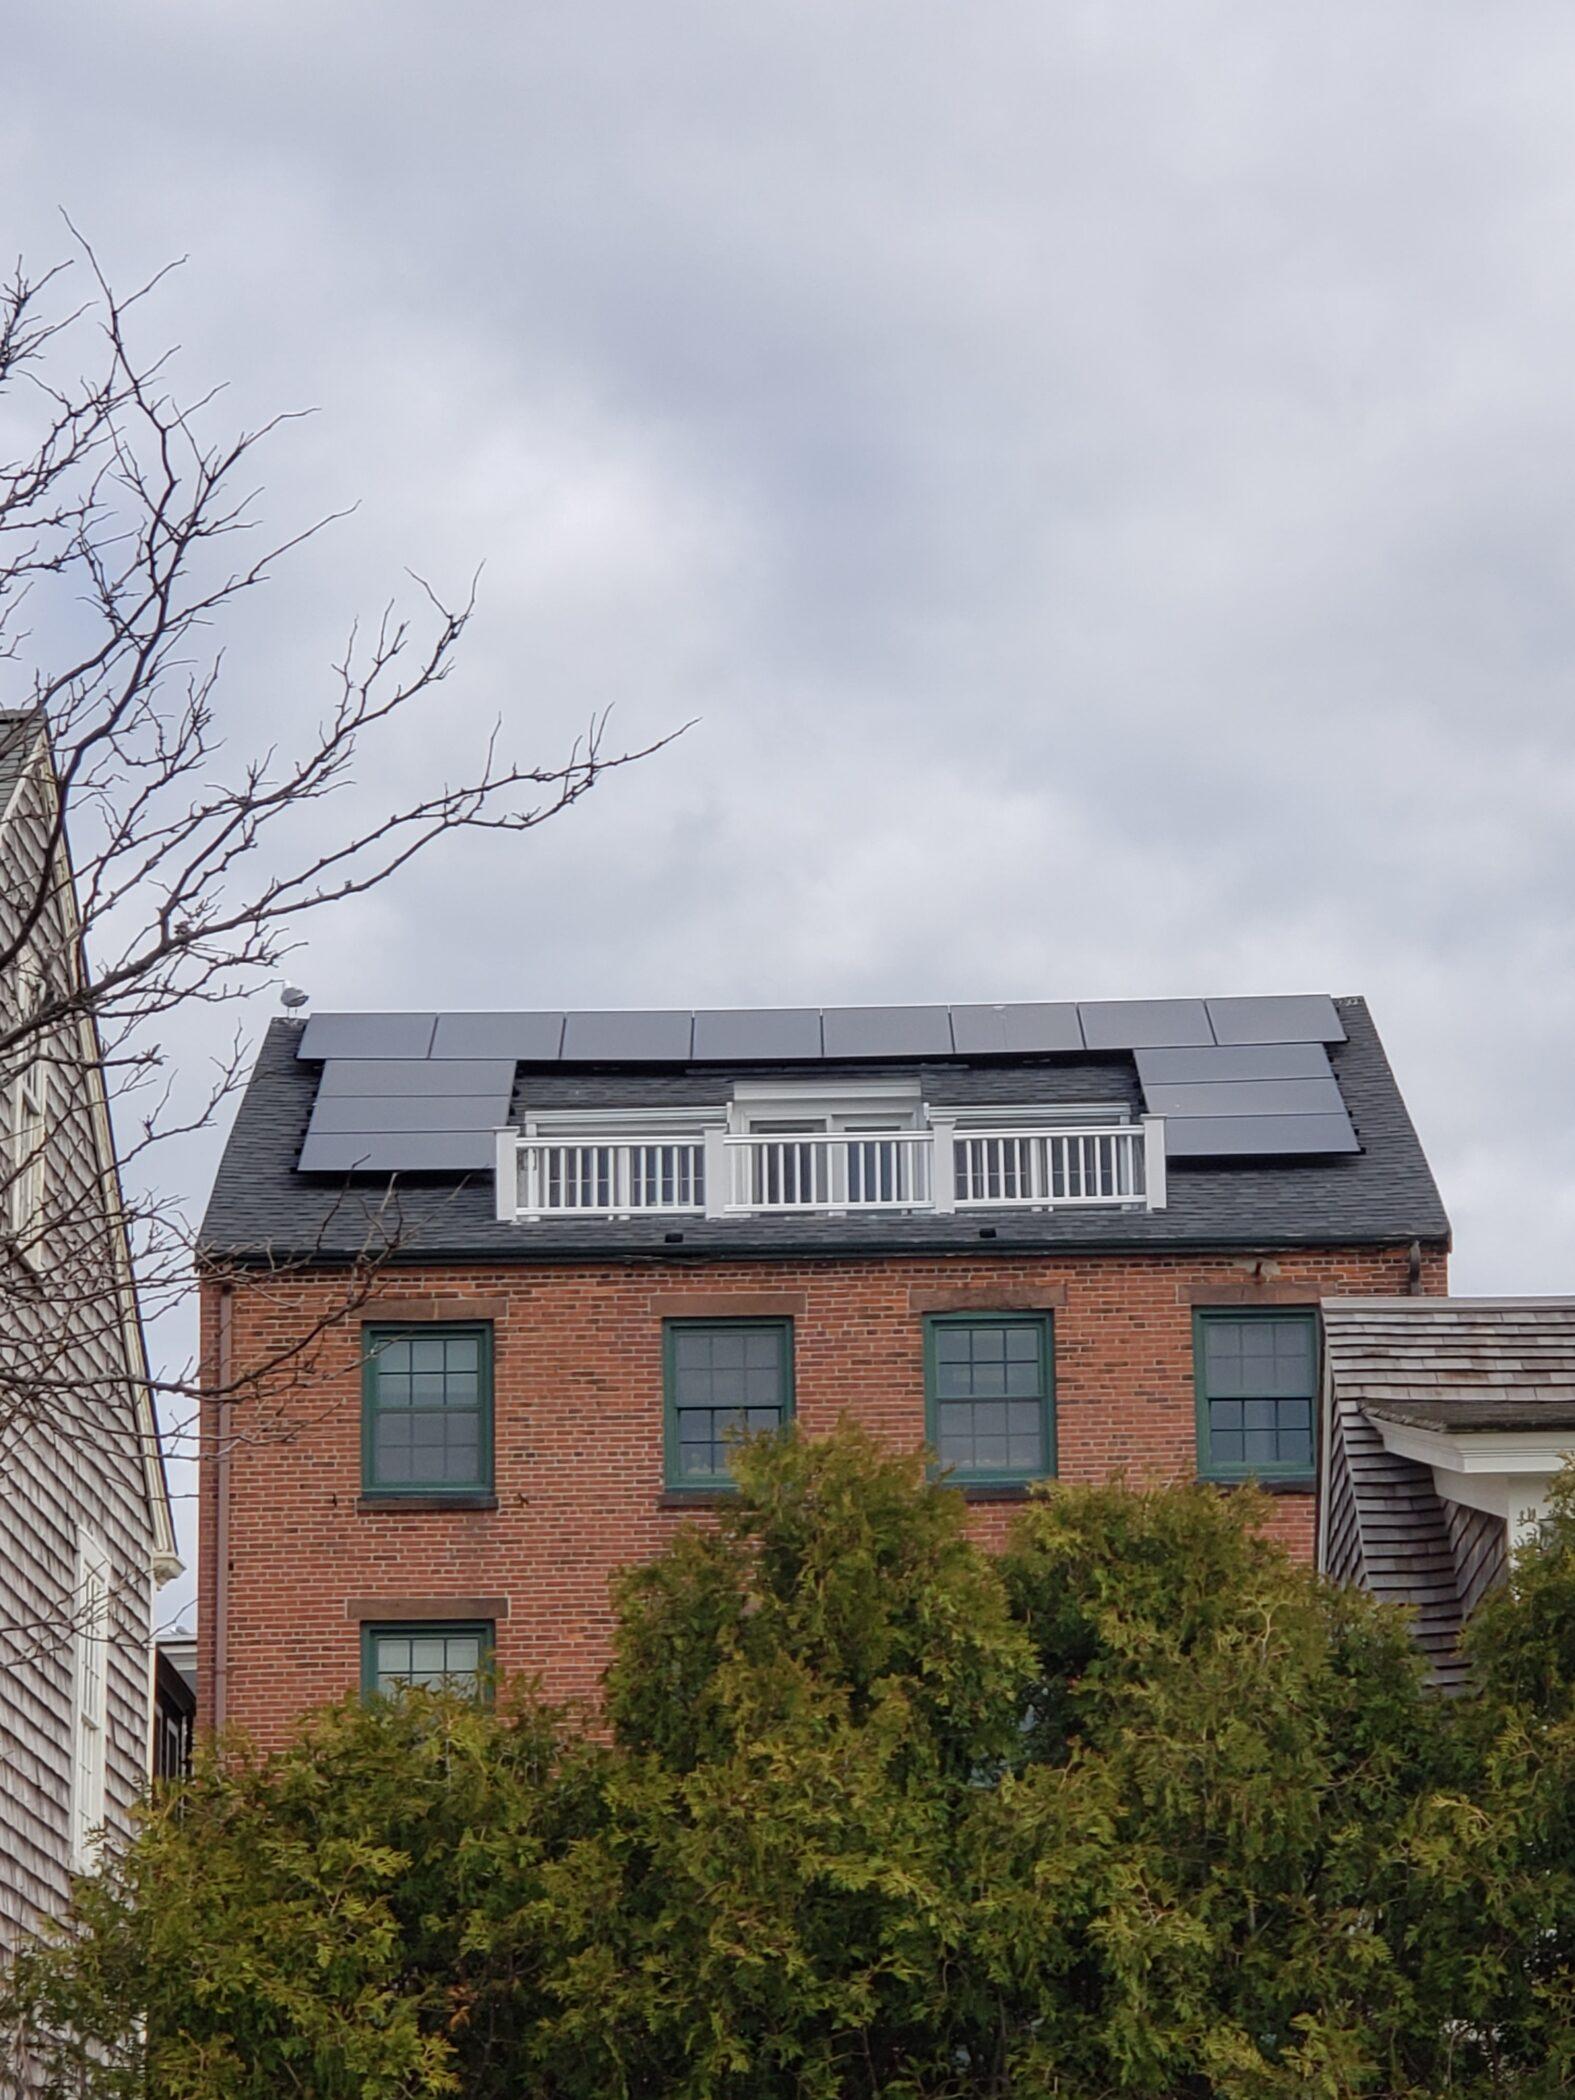 installation de panneaux solaires et étapes vers une communauté plus verte